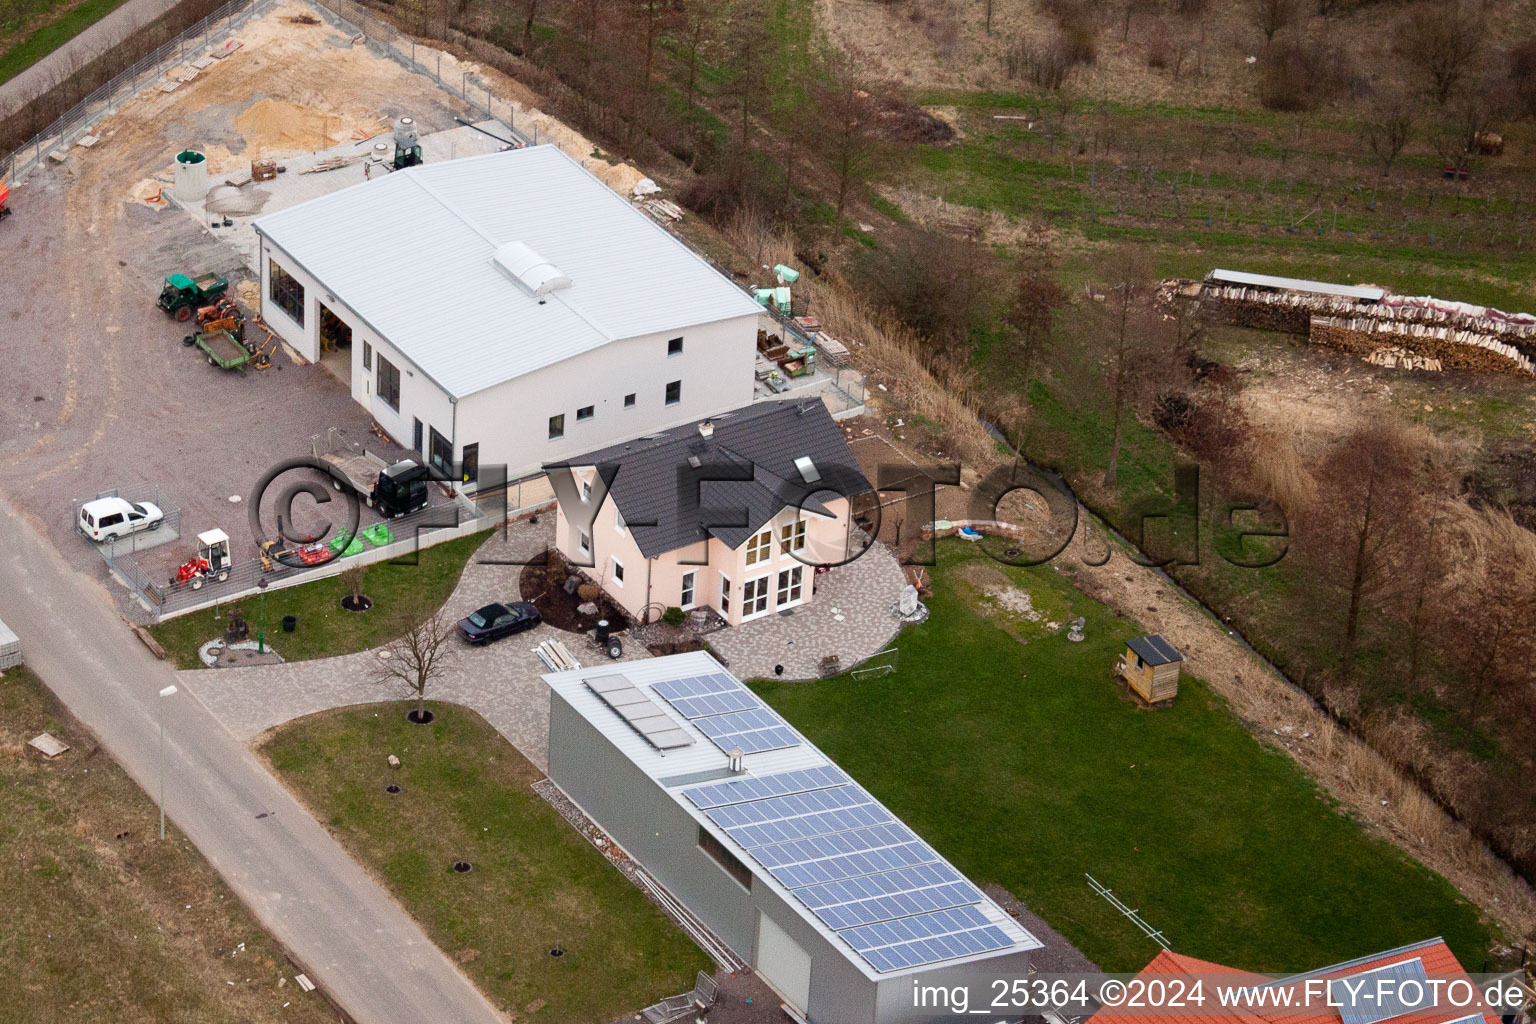 Drohnenbild von An der Ahlmühle, Deutsches Weintor eG in Ilbesheim bei Landau in der Pfalz im Bundesland Rheinland-Pfalz, Deutschland